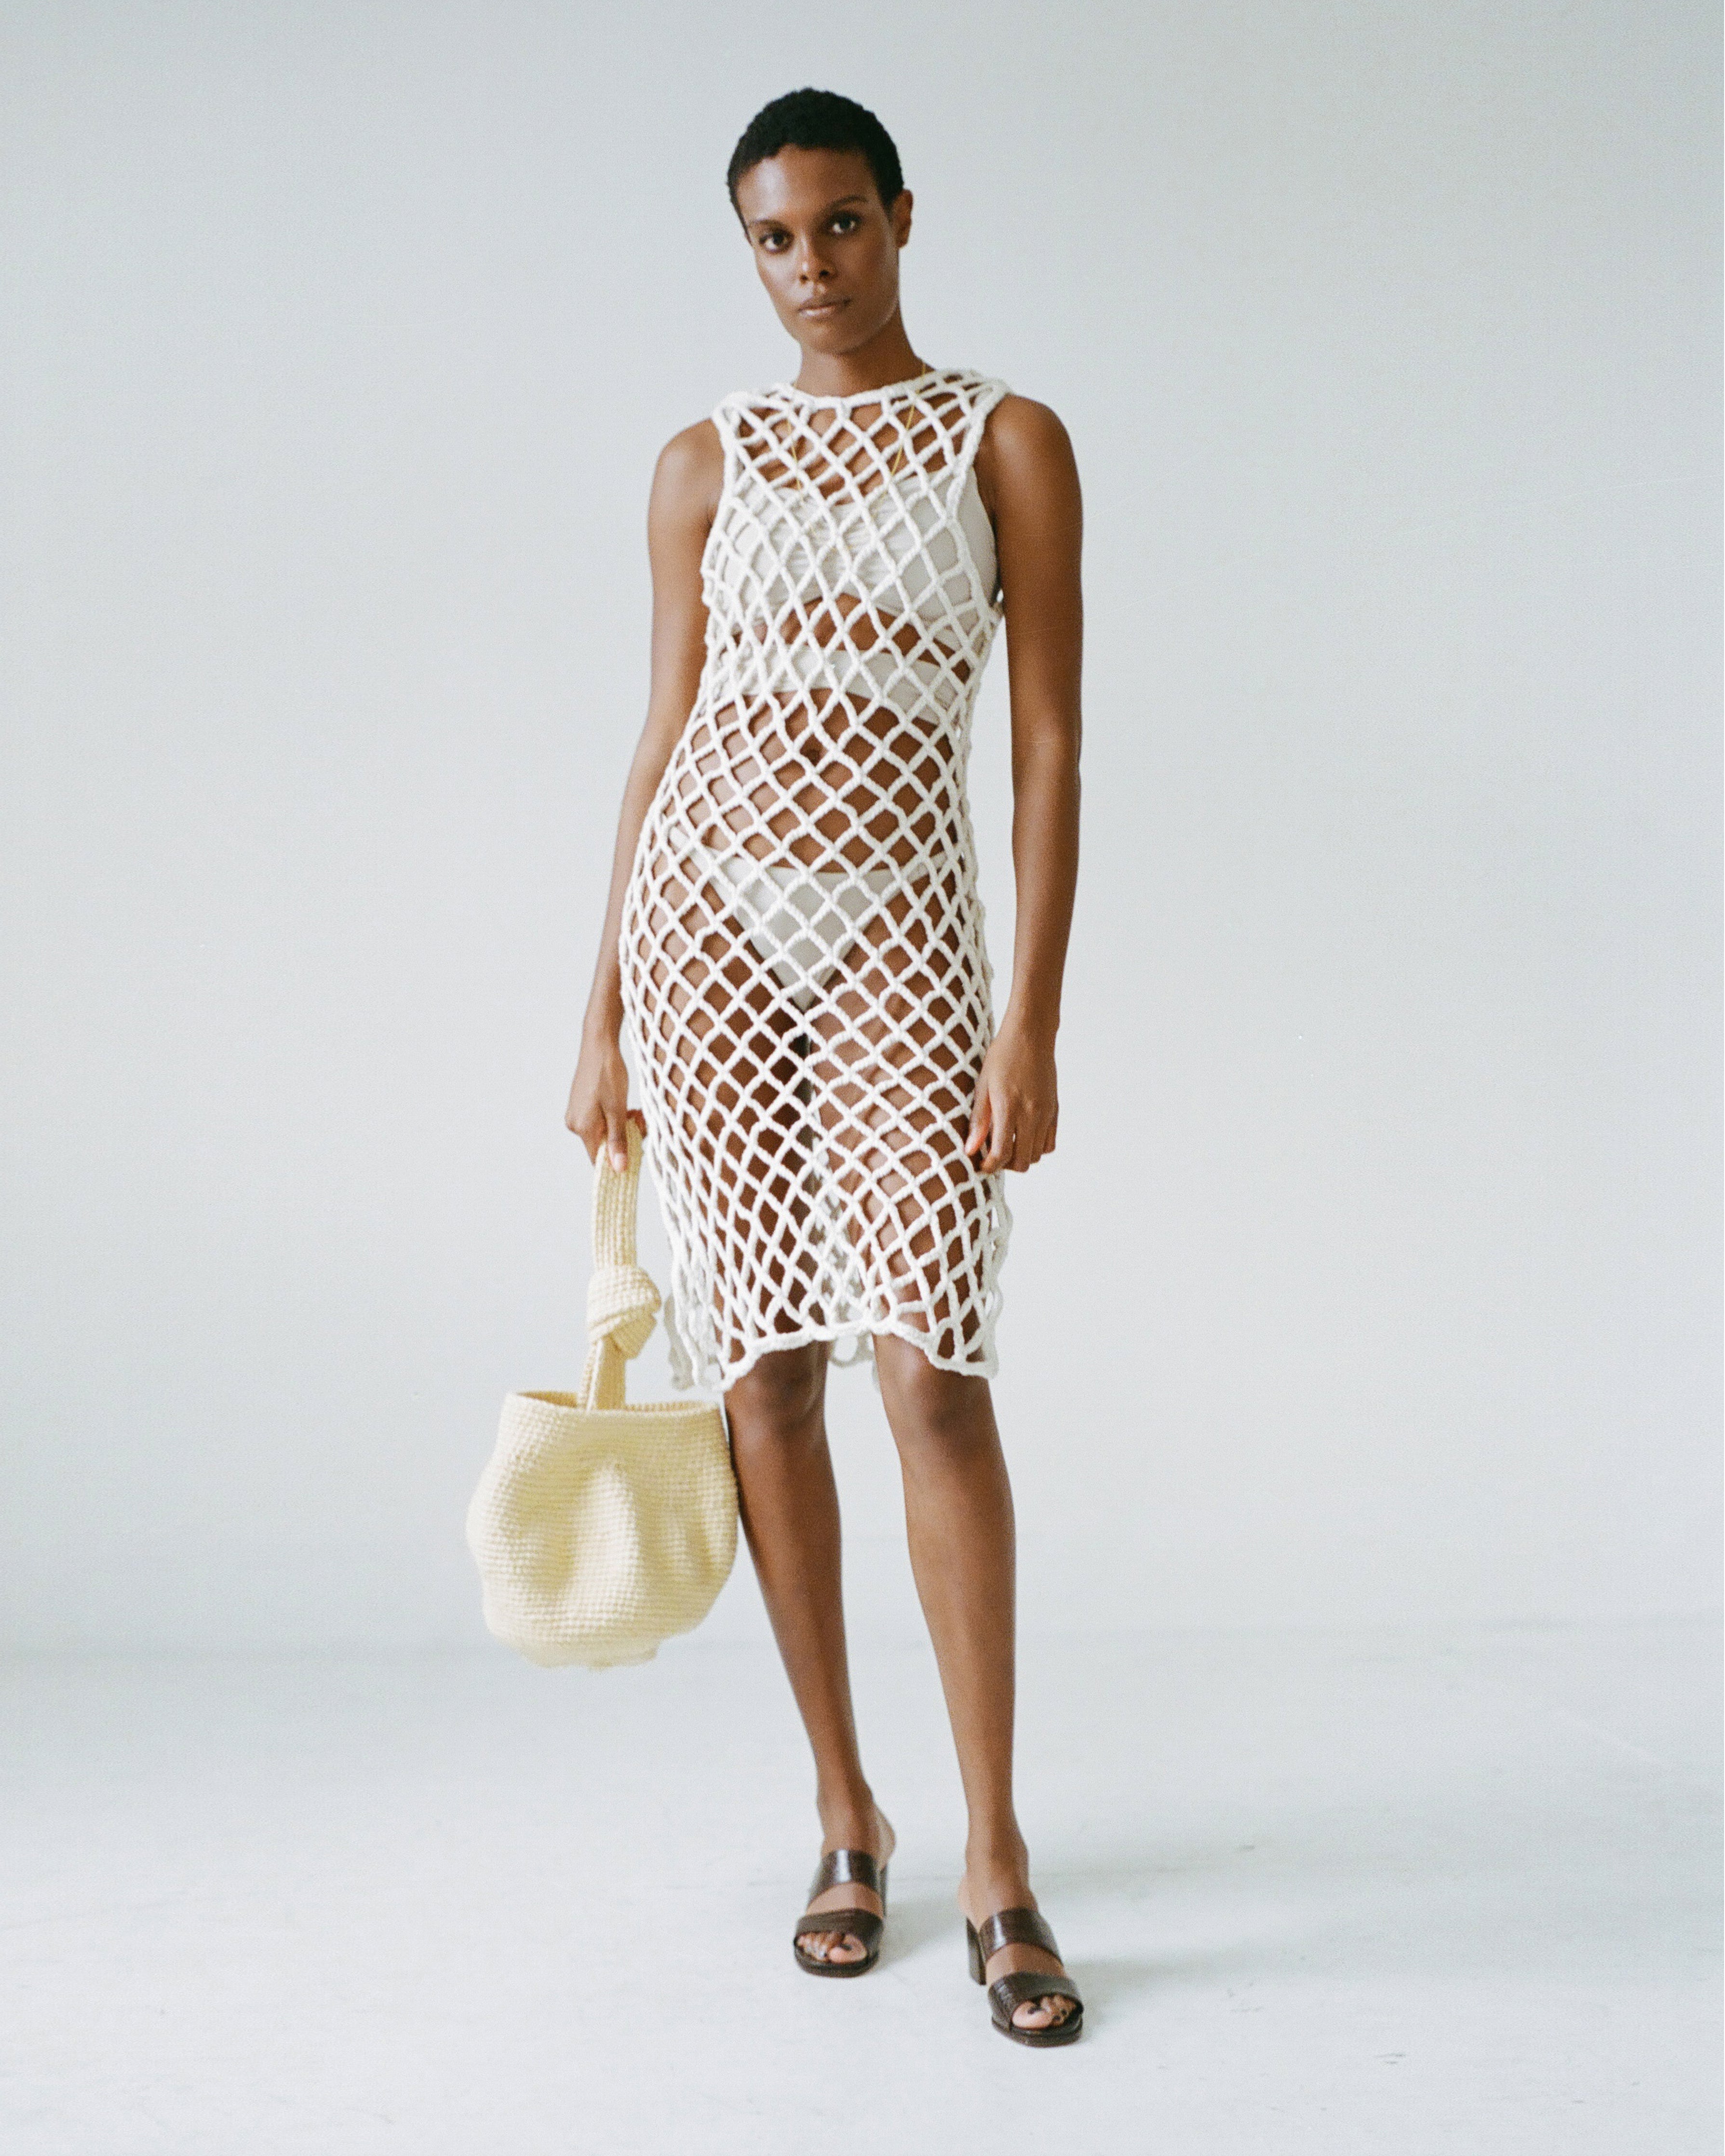 white crochet dress